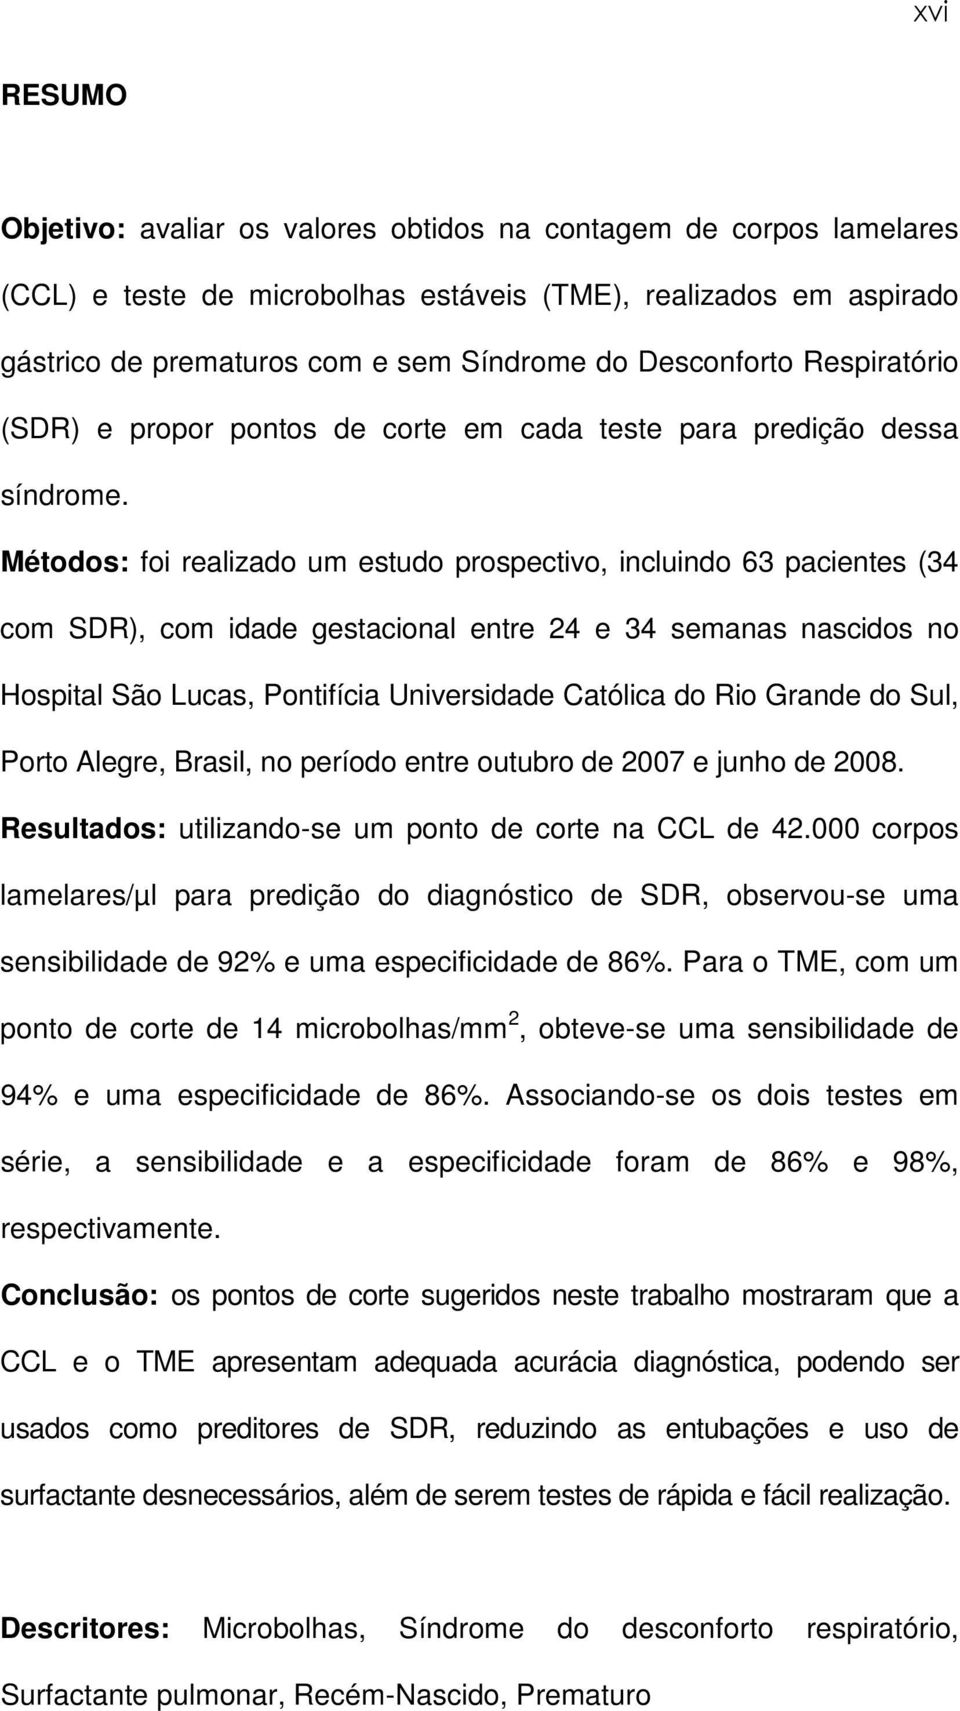 Métodos: foi realizado um estudo prospectivo, incluindo 63 pacientes (34 com SDR), com idade gestacional entre 24 e 34 semanas nascidos no Hospital São Lucas, Pontifícia Universidade Católica do Rio